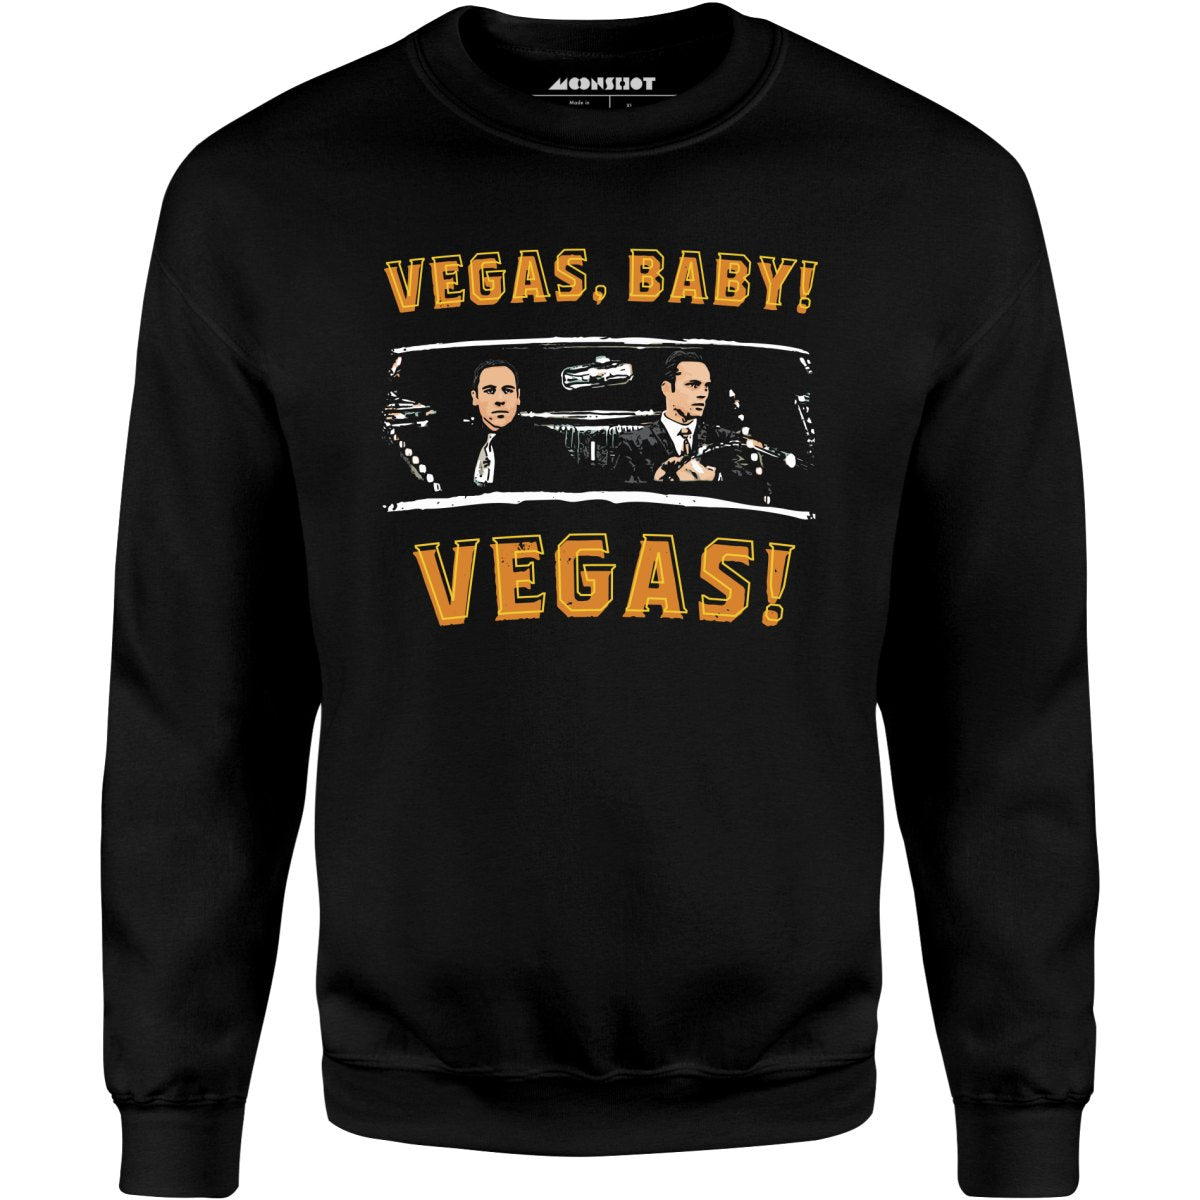 Vegas, Baby! Vegas! - Unisex Sweatshirt